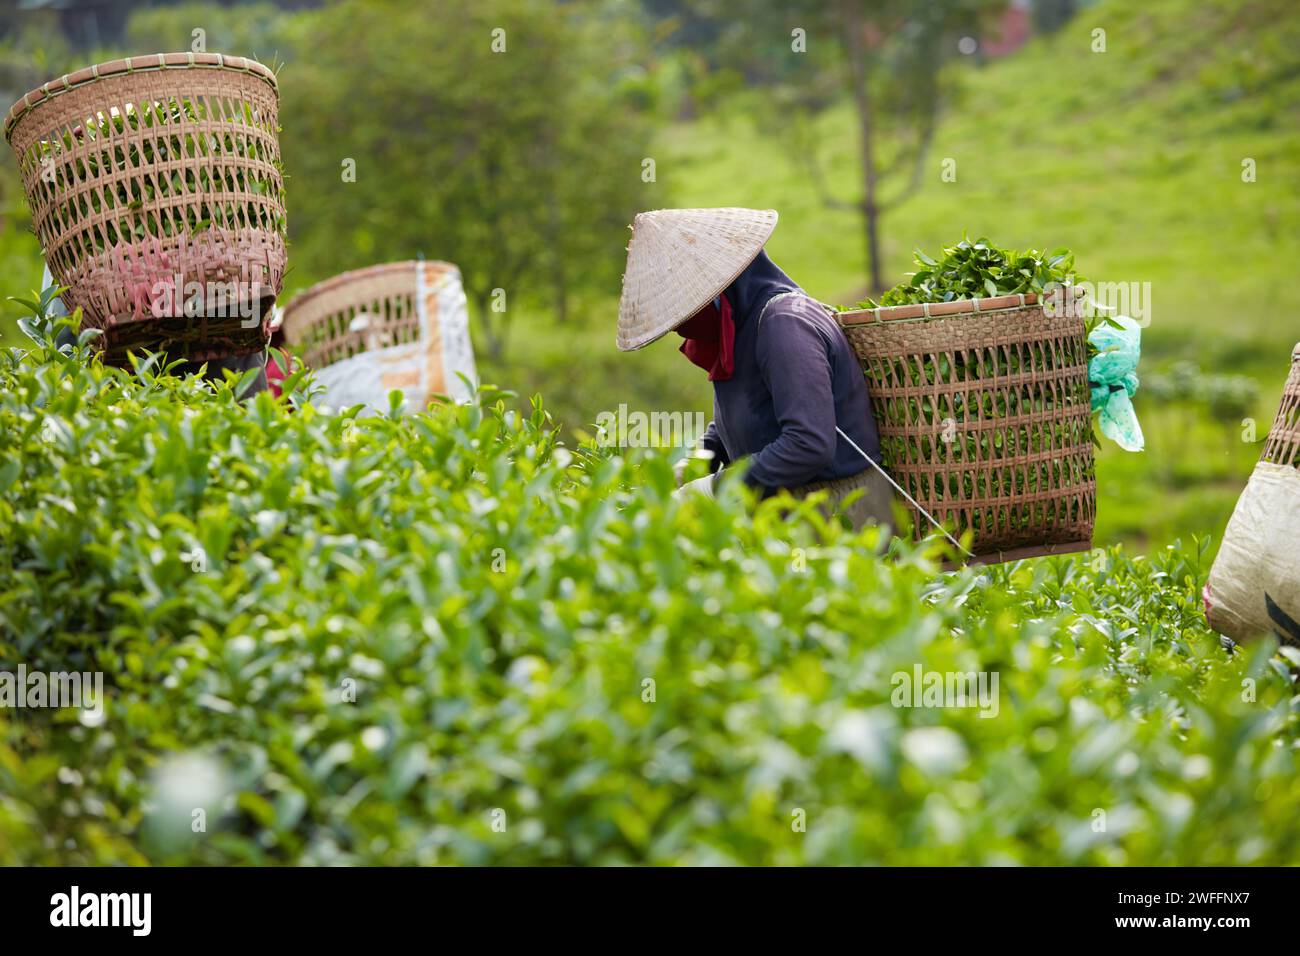 Vietnamesische Bauern ernten frische grüne Teeblätter auf der Teeplantage, jeder Landwirt hat einen großen Bambuskorb auf dem Rücken, um grünen Tee zu sammeln Stockfoto